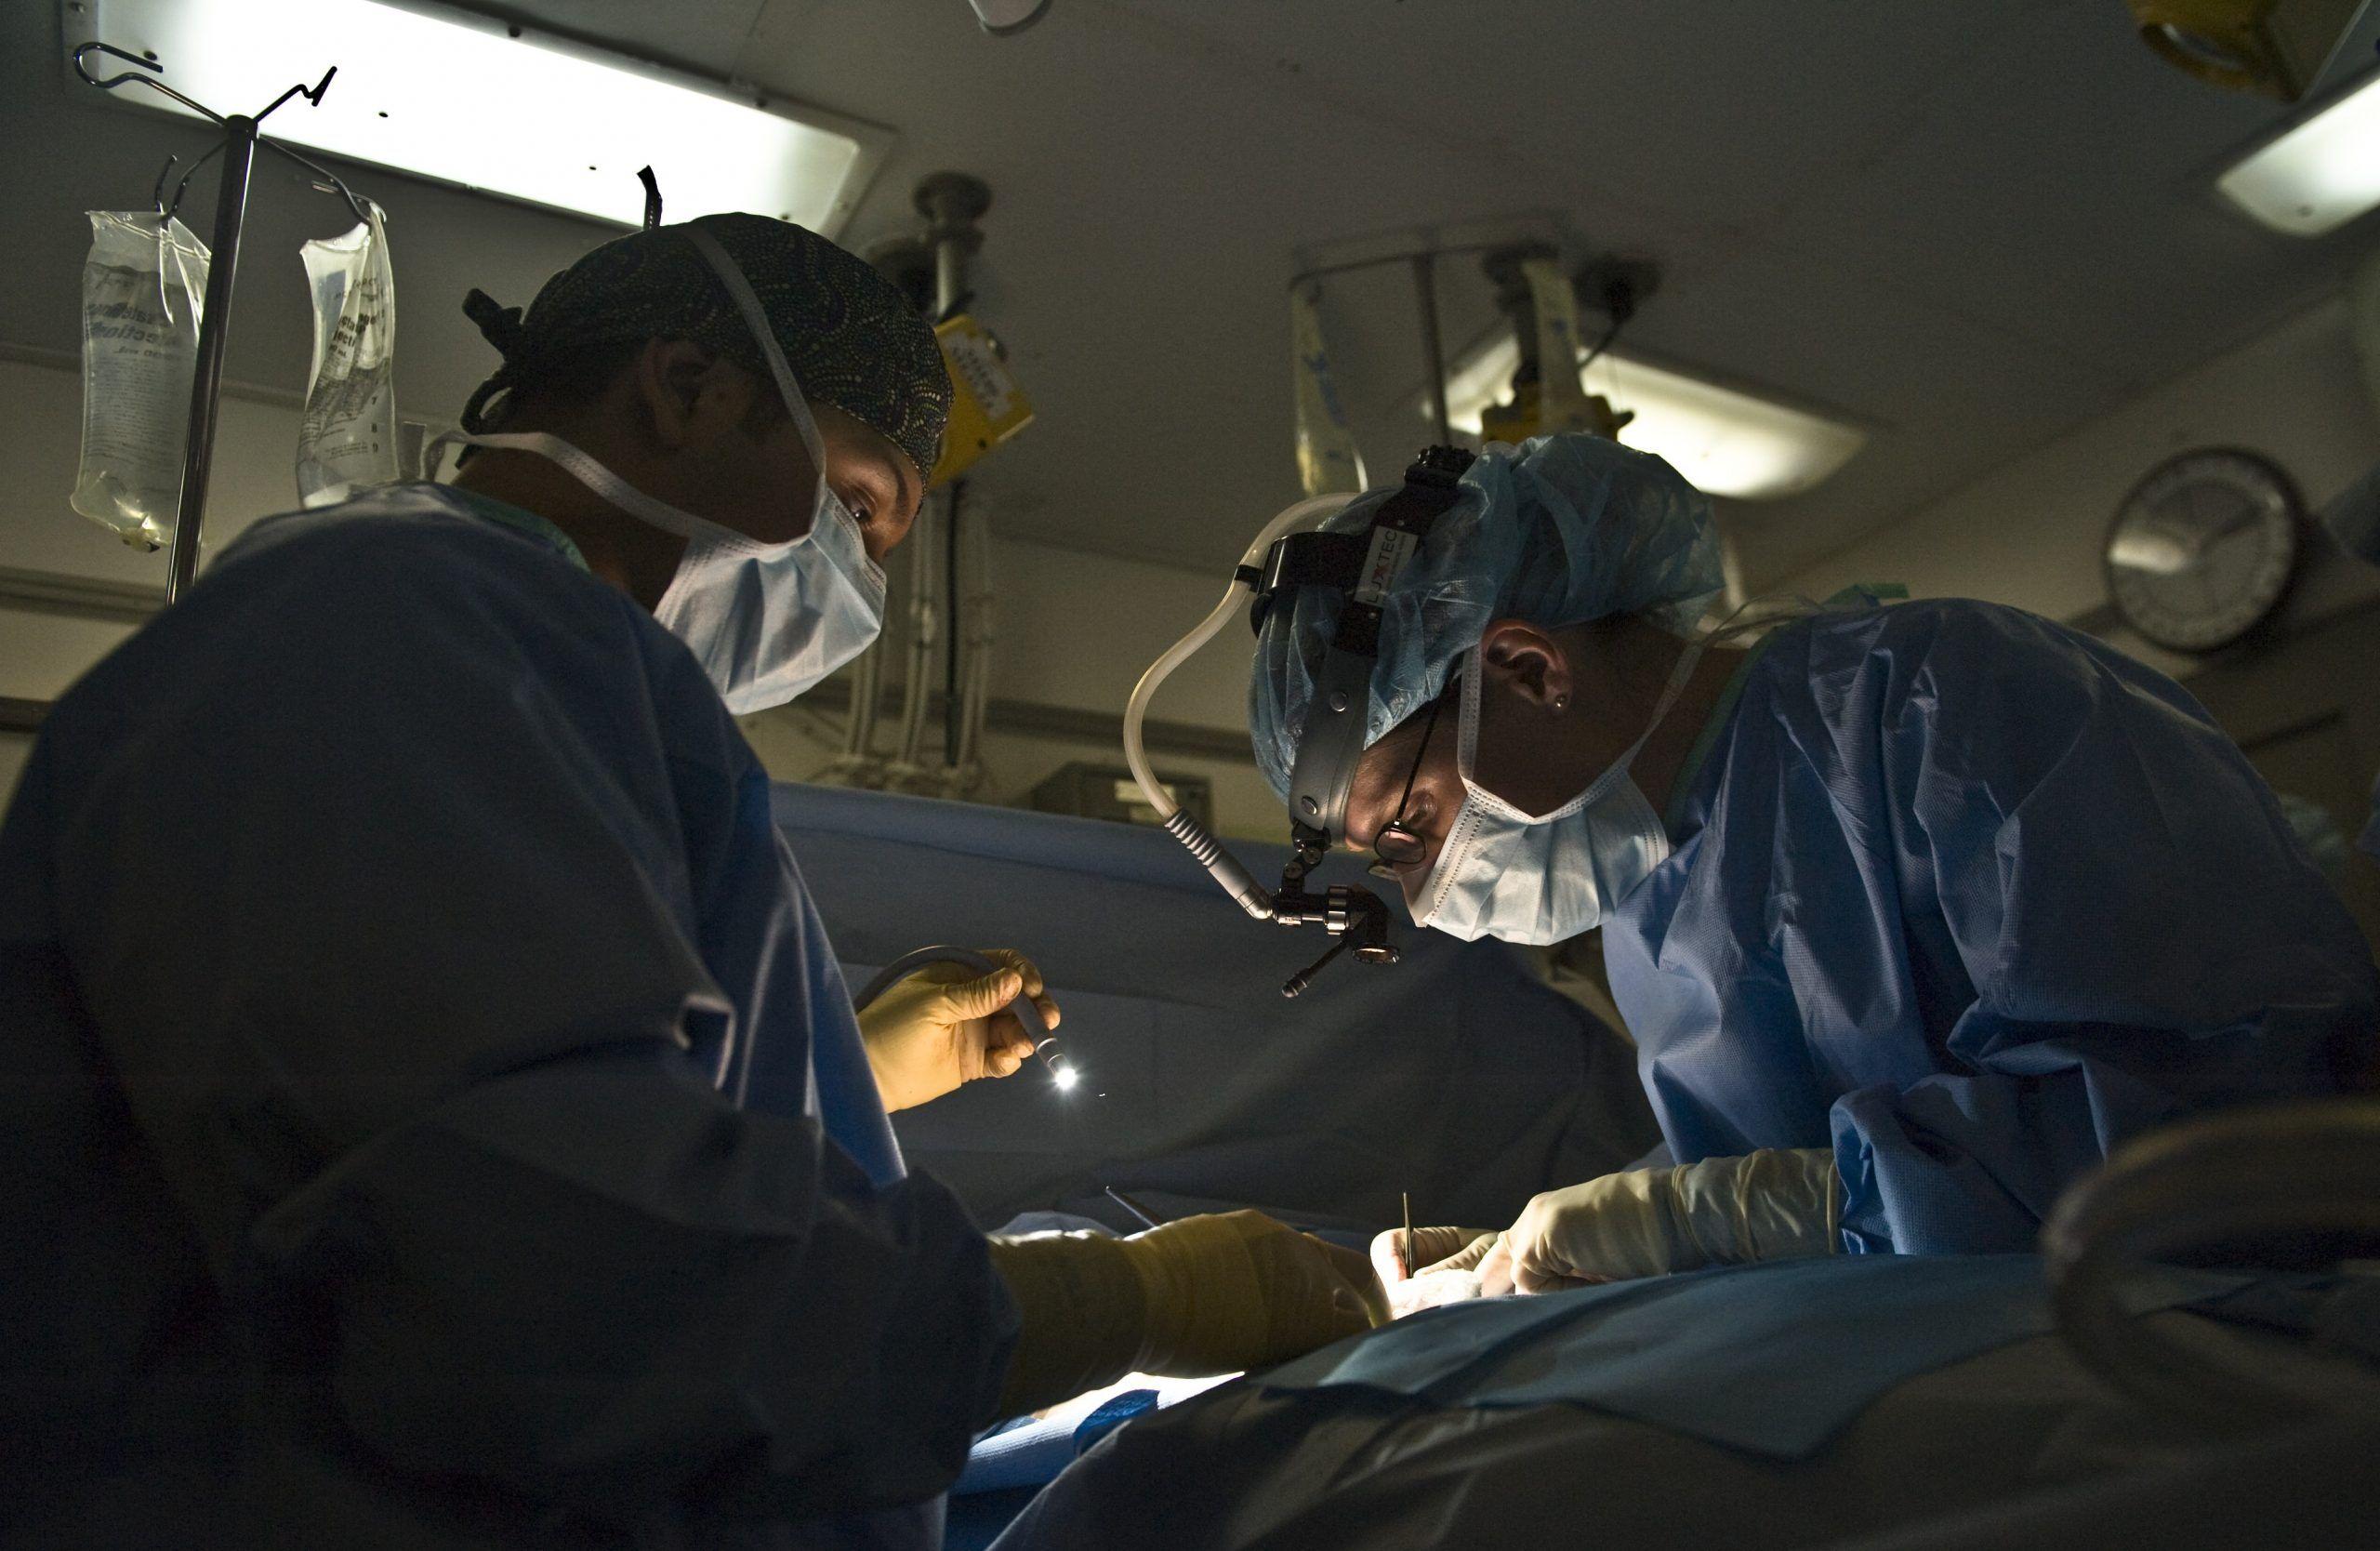 Операции по удалению злокачественной опухоли: хирургия при раке | клиники «евроонко»